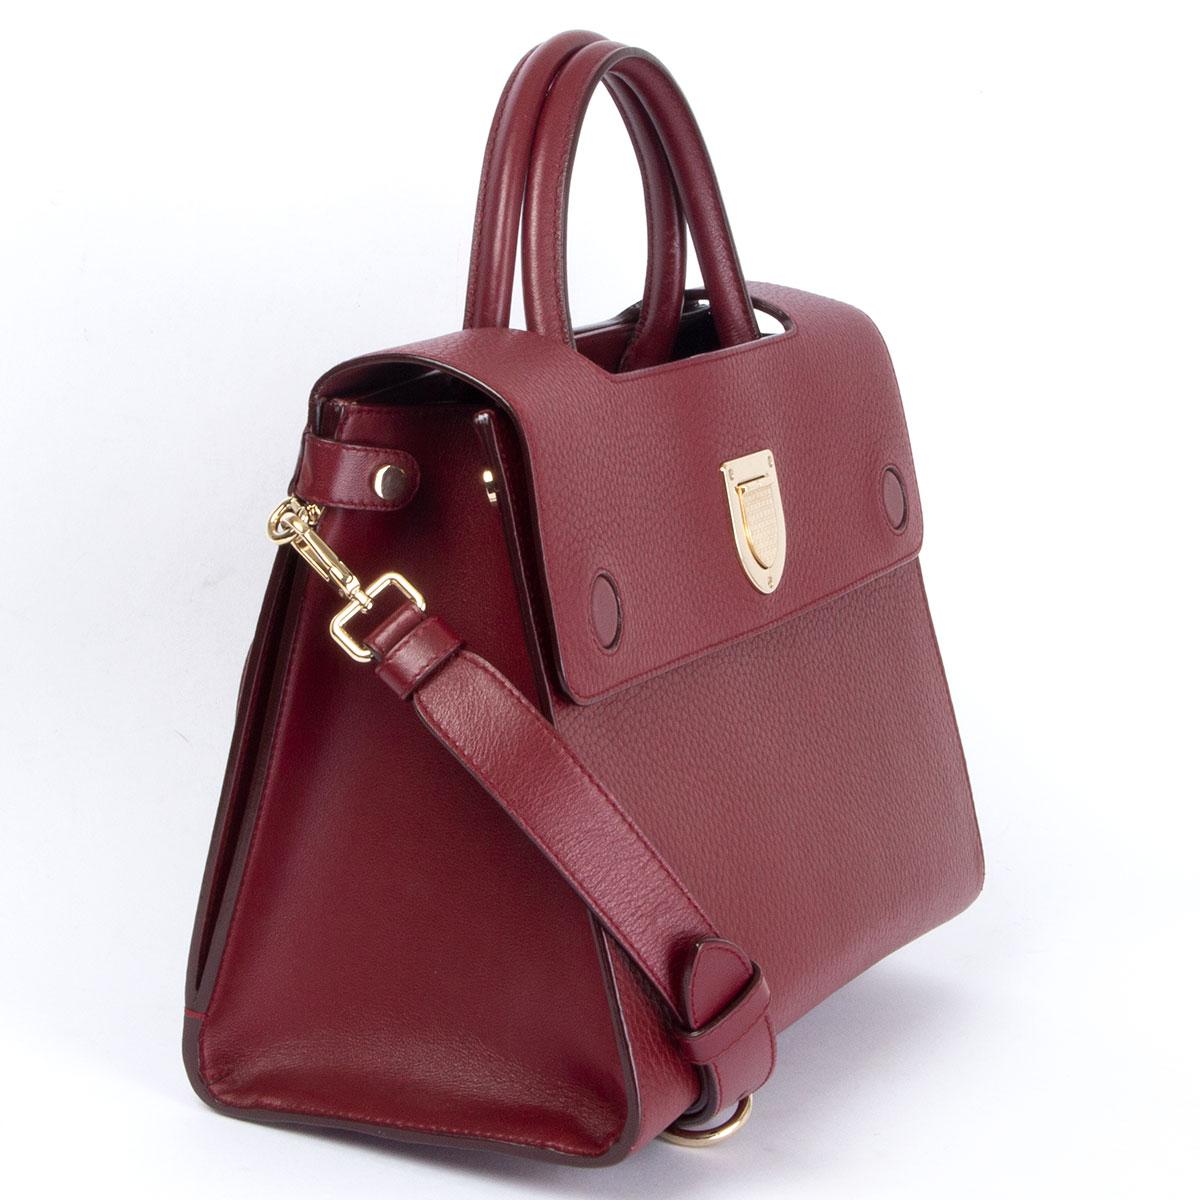 100% authentique sac à bandoulière Christian Dior Diorever Medium en cuir grainé bordeaux. Il s'ouvre par un rabat magnétique et est doublé en veau bordeaux. Il comporte trois poches ouvertes et une grande poche arrière ouverte. Livré avec une